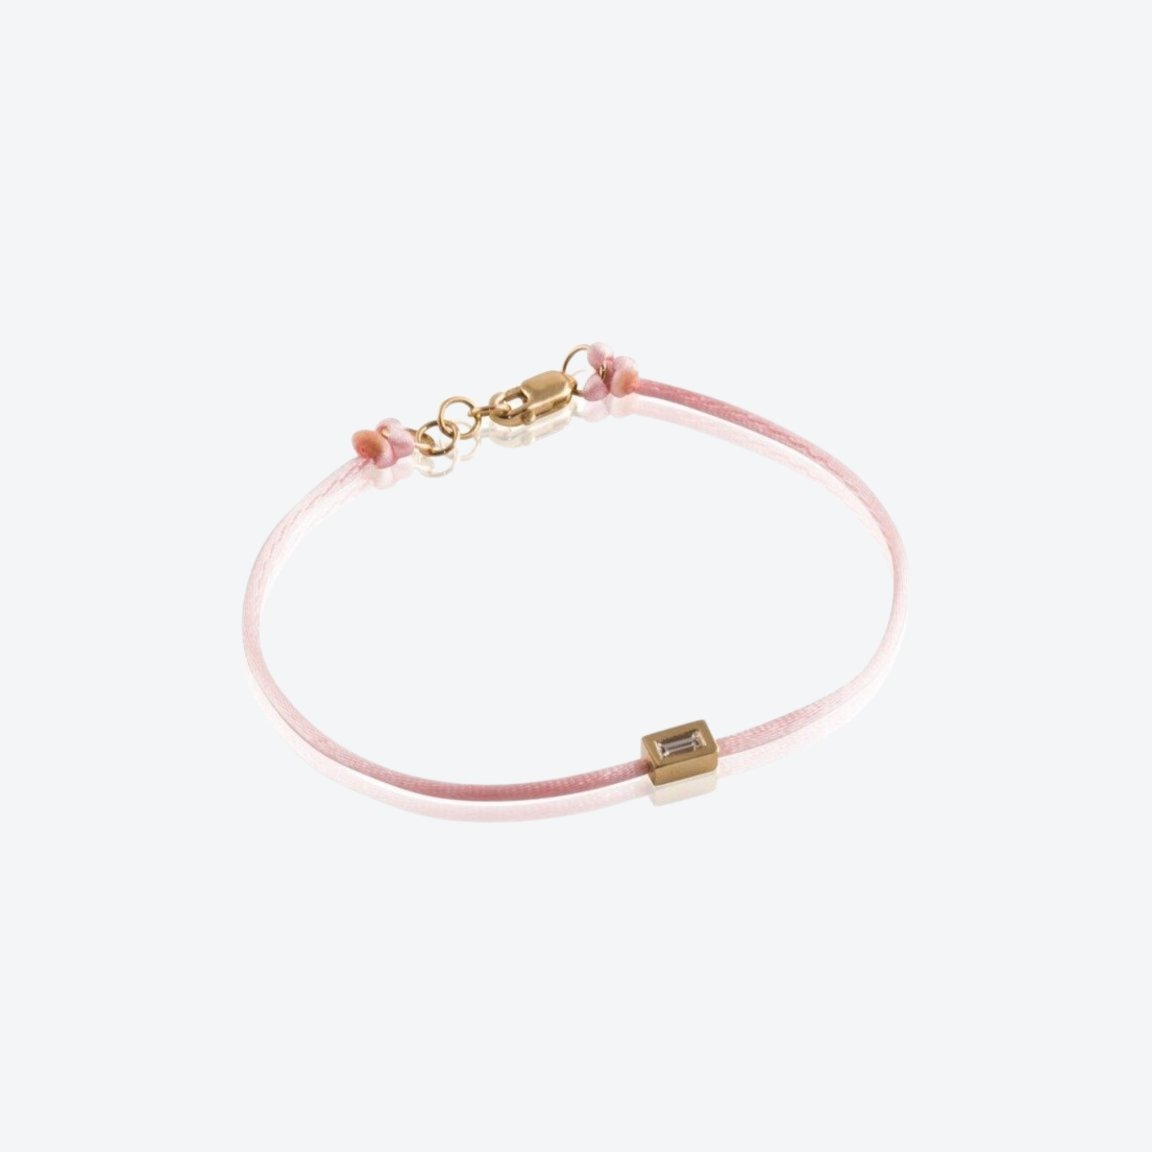 Pink String Bracelet Meaning